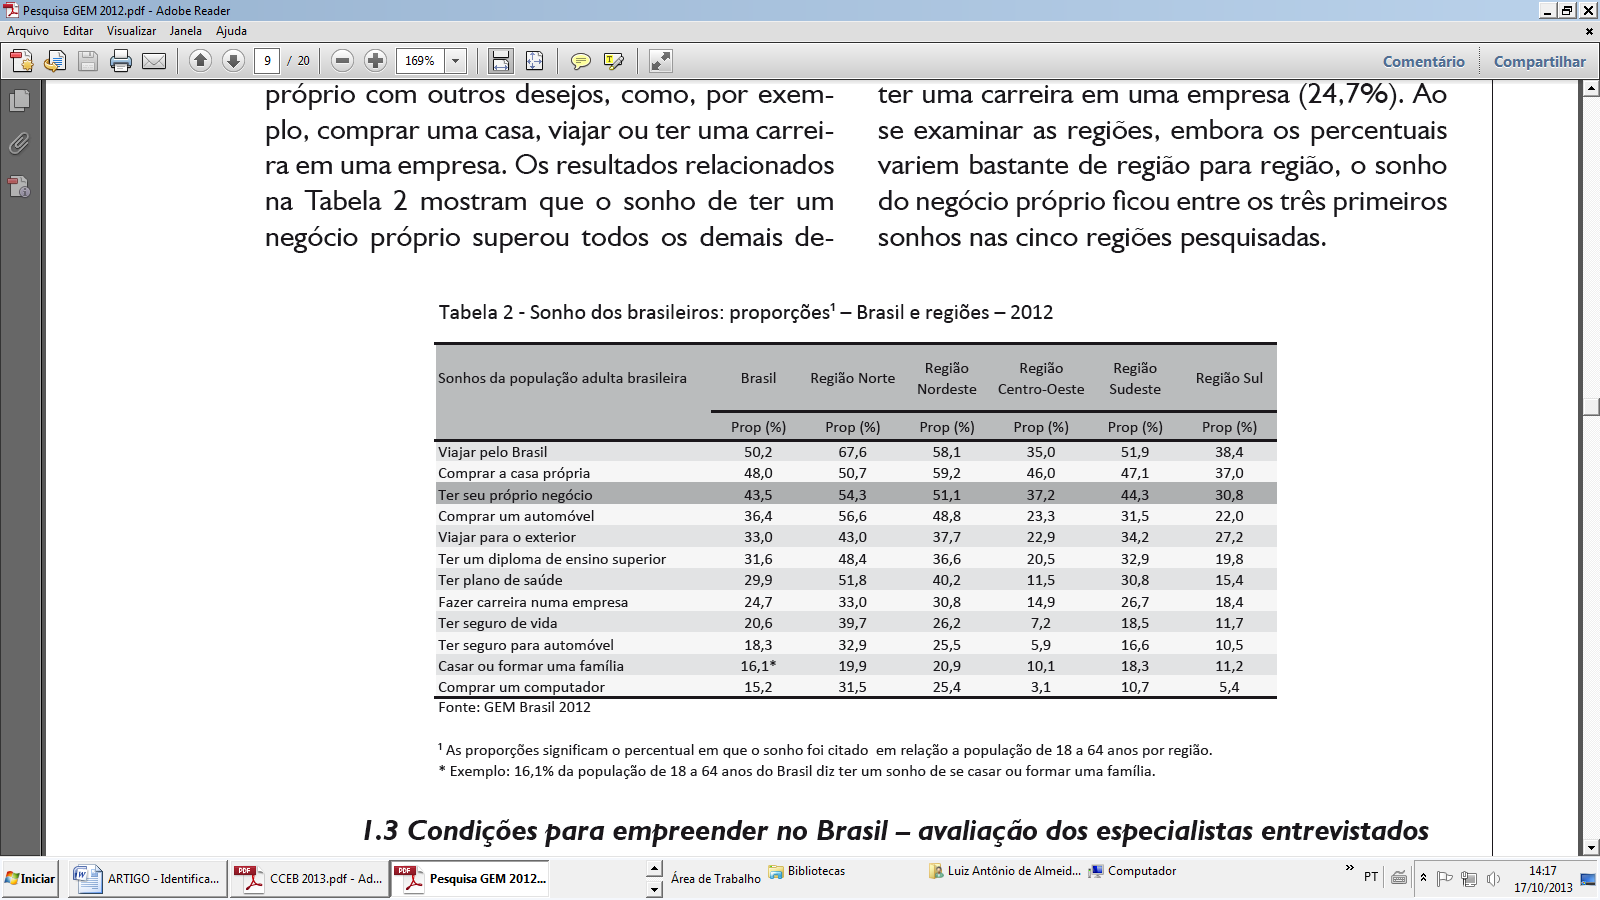 Sonhos dos brasileiros Fonte : Relatório Executivo Empreendedorismo no Brasil http://www.